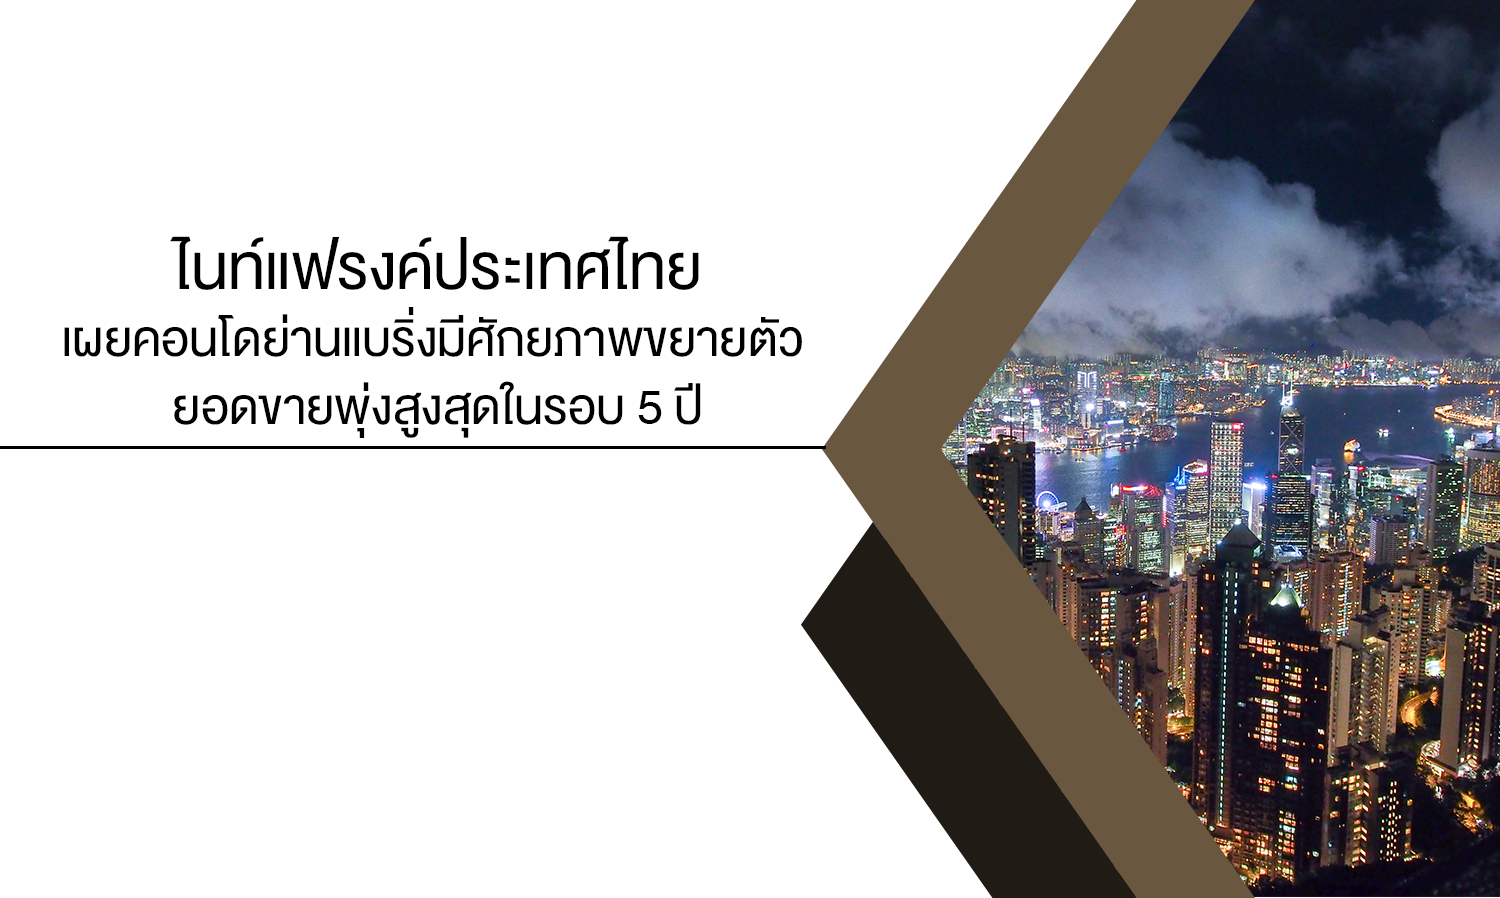 ไนท์แฟรงค์ประเทศไทยเผยคอนโดย่านแบริ่งมีศักยภาพขยายตัว ยอดขายพุ่งสูงสุดในรอบ 5 ปี